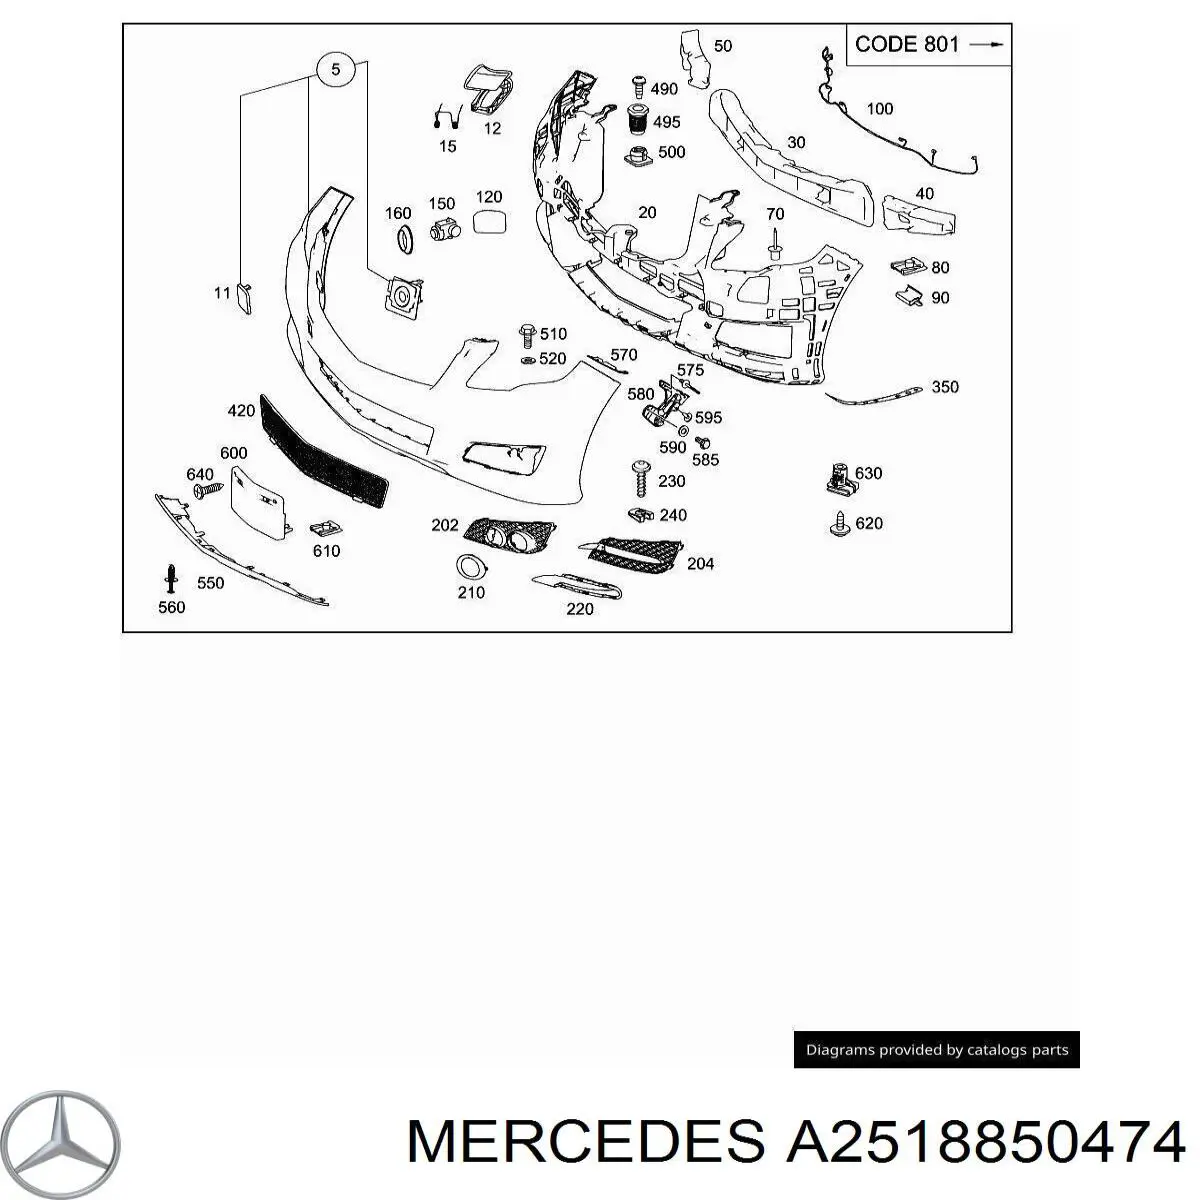 A2518850474 Mercedes ободок (окантовка фары противотуманной правой)